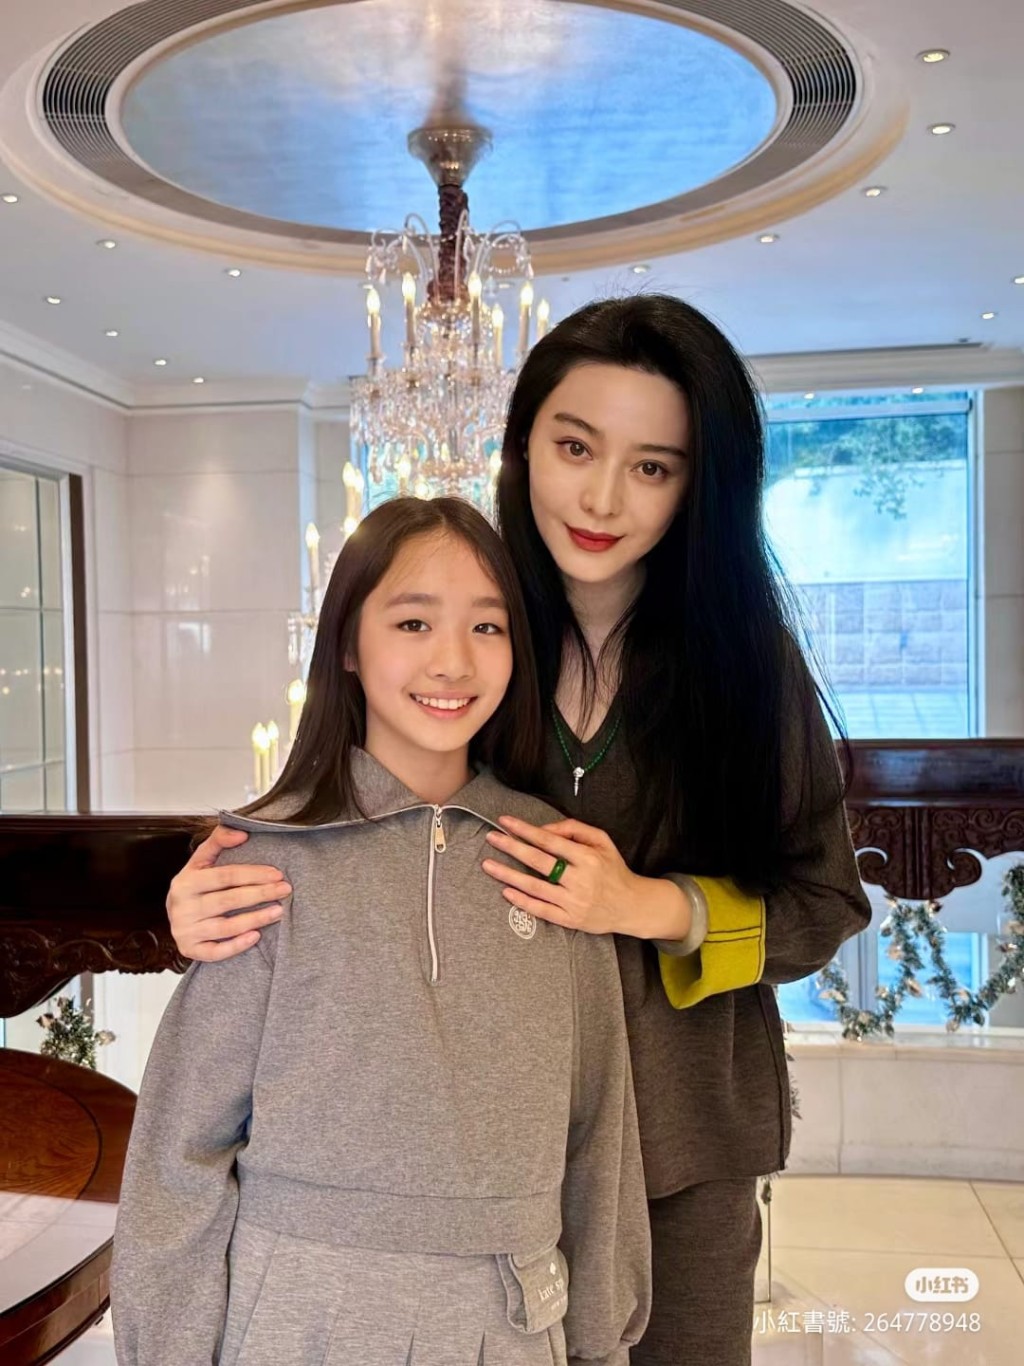 昨日有小紅書博主分享出她的女兒與范冰冰的合照。